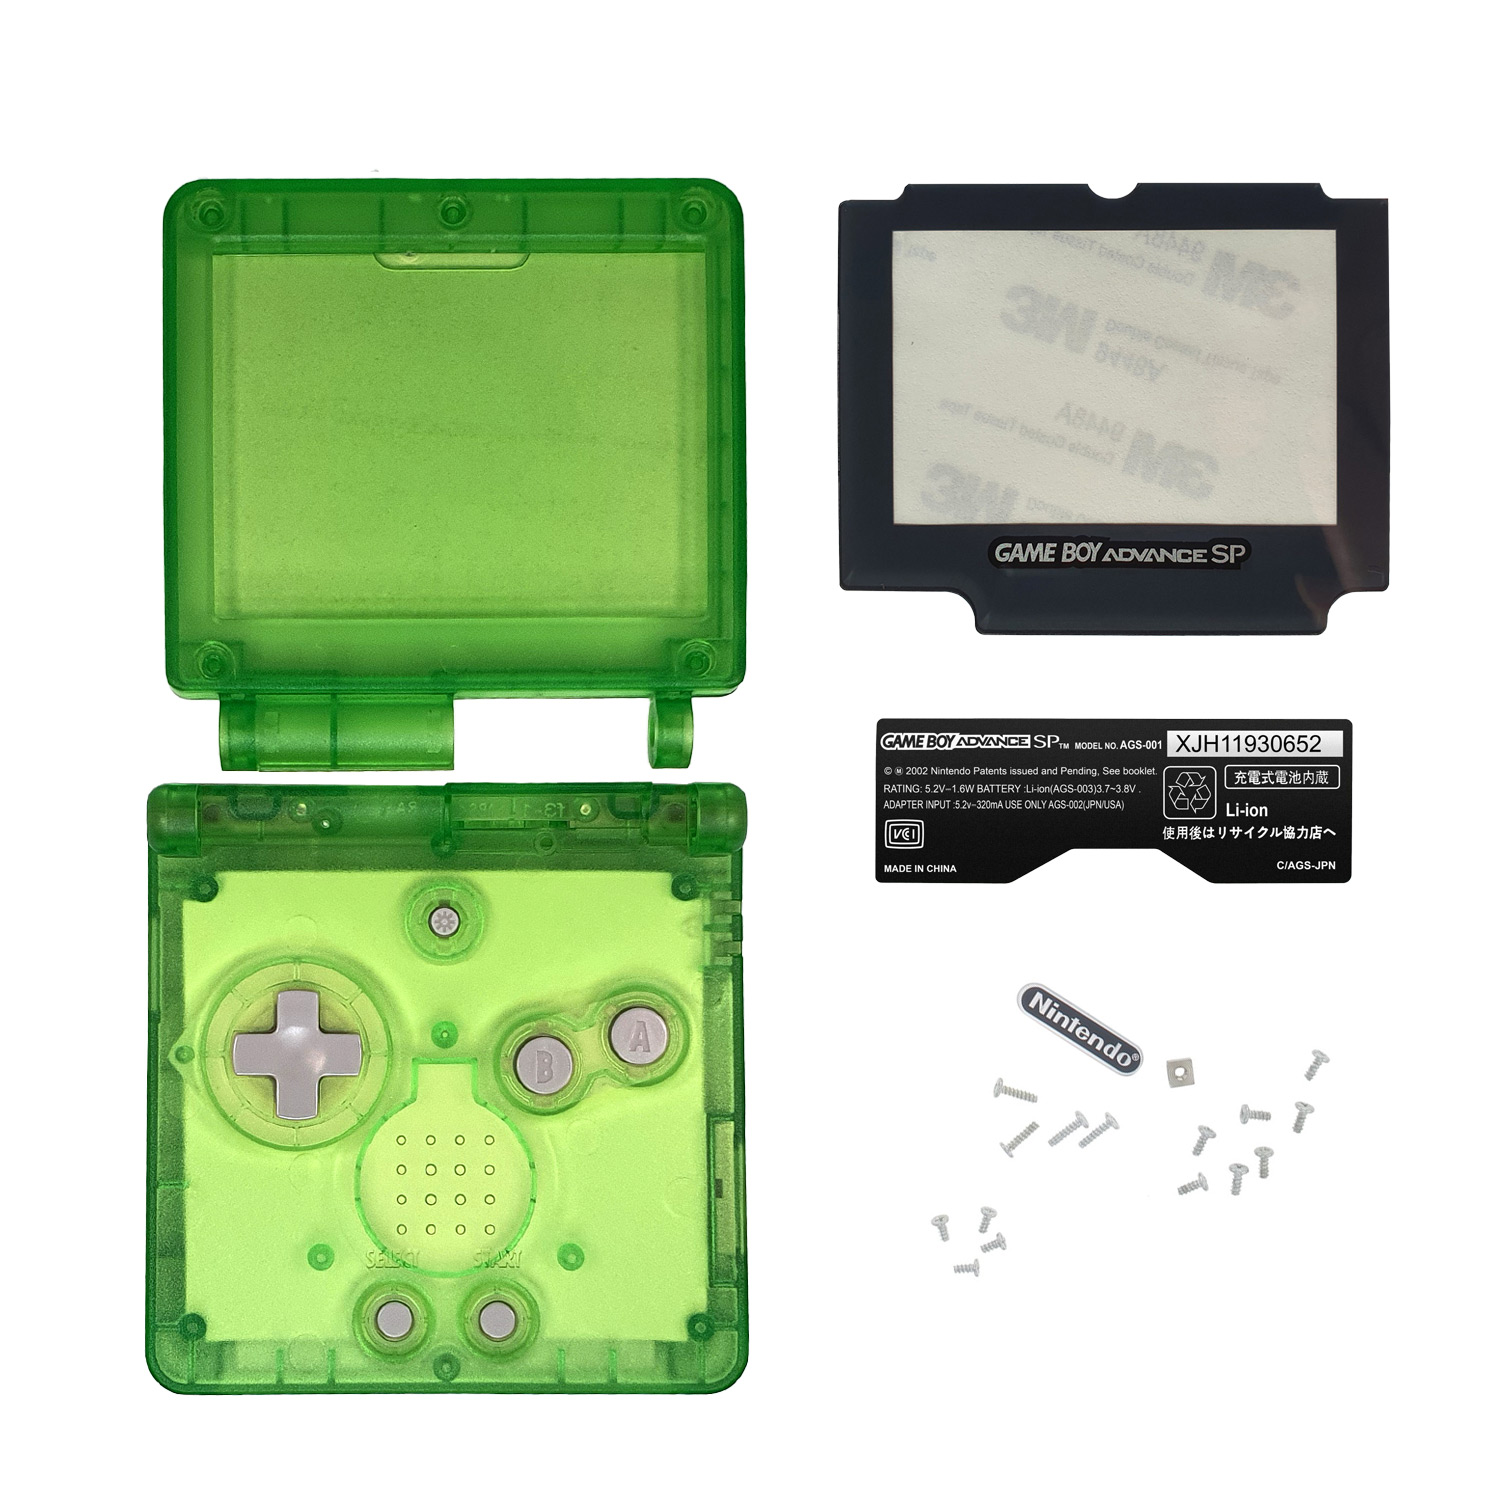 Etui (Helder Groen) voor Game Boy Advance SP